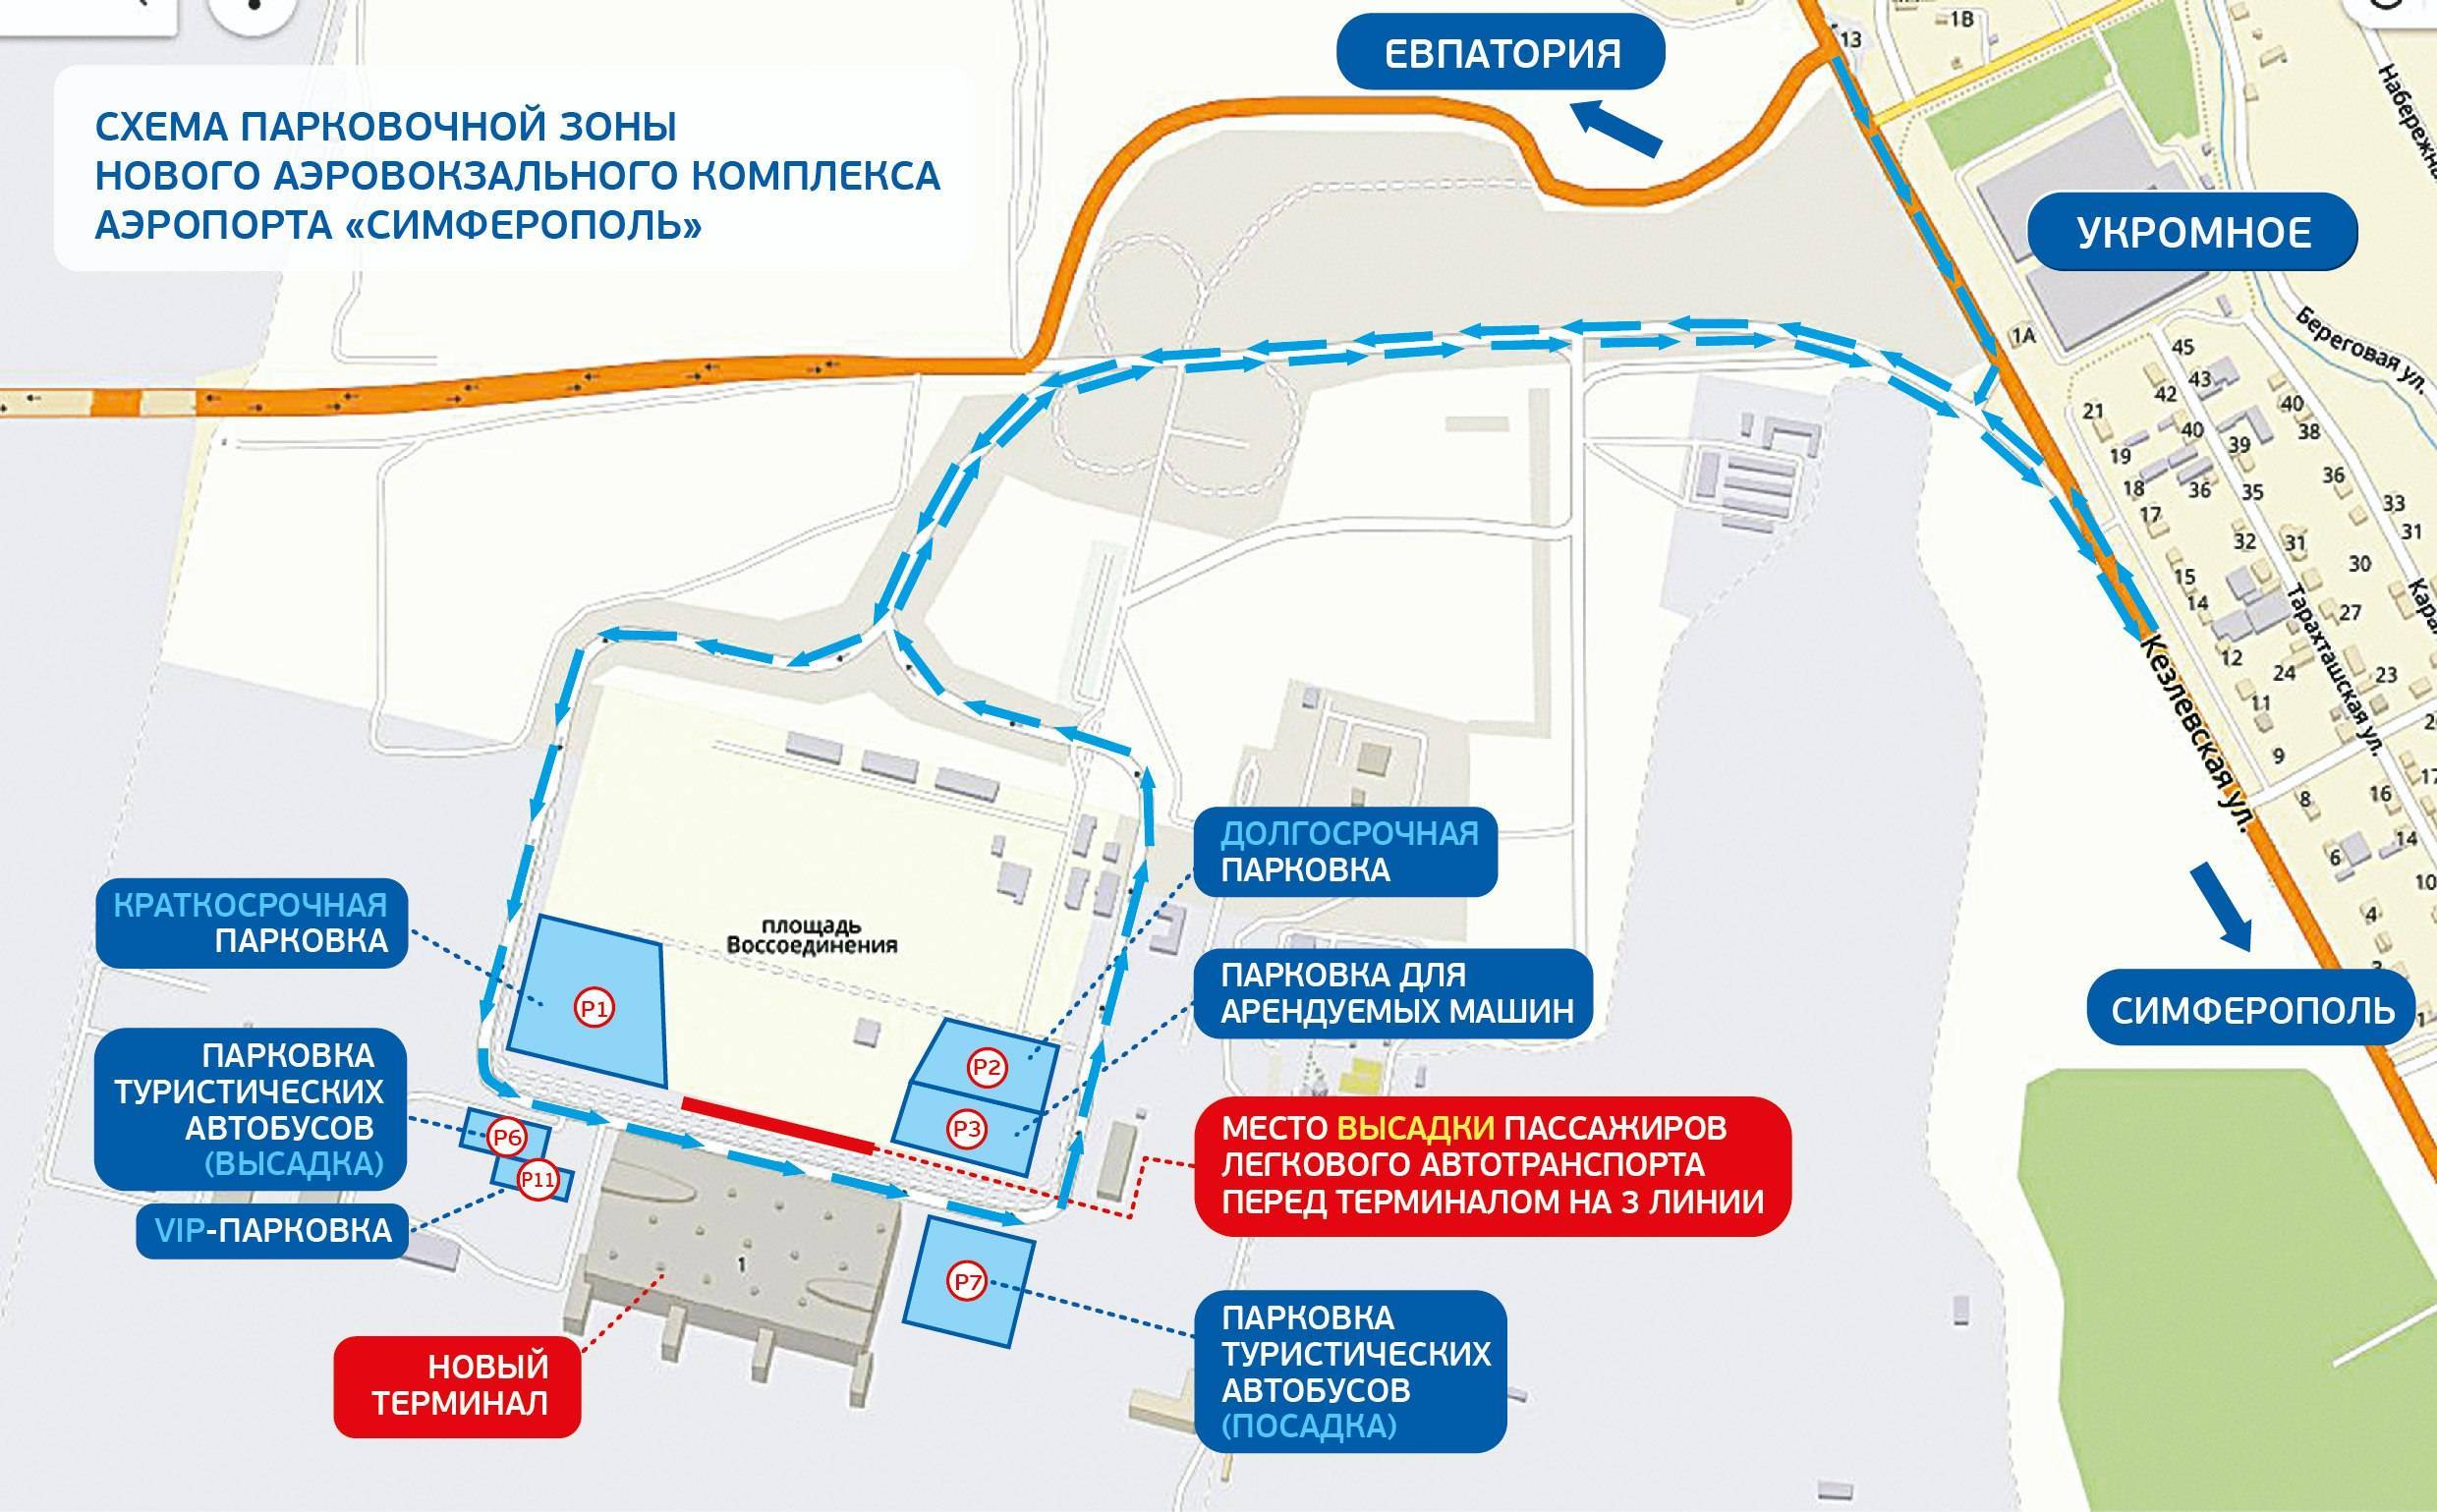 Аэропорт симферополь на карте: схема терминалов, расположение в городе